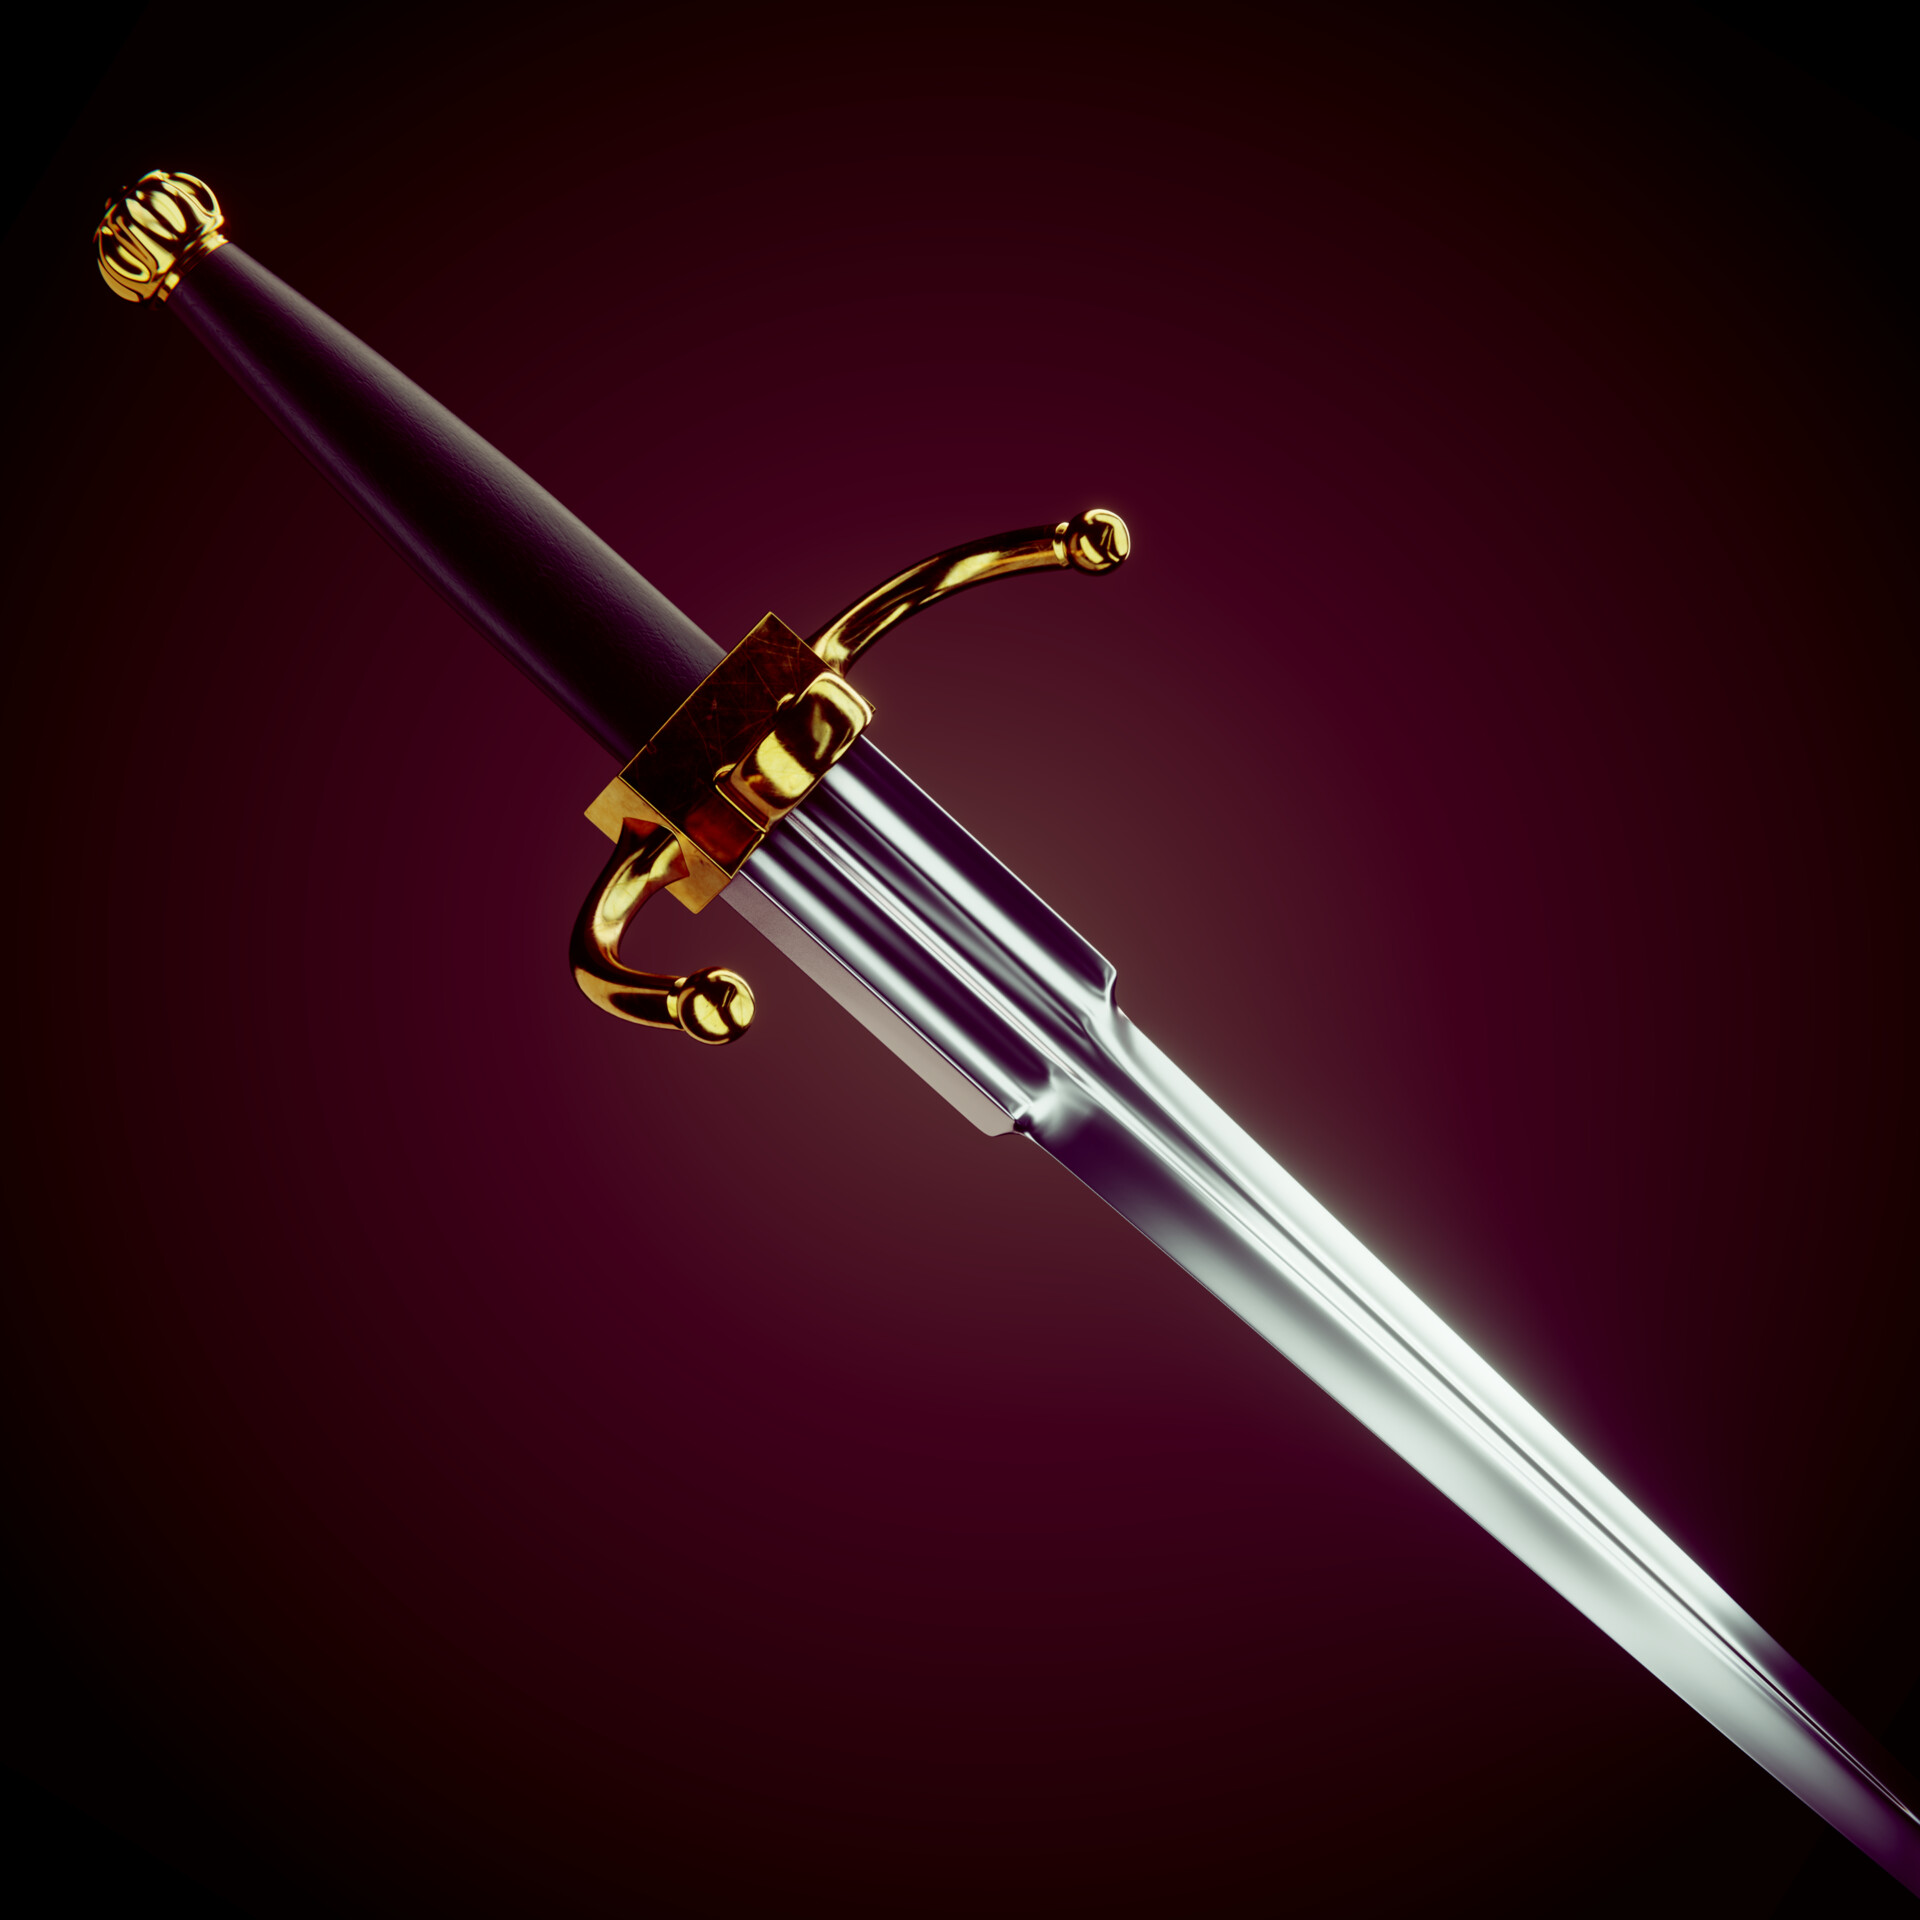 Noureddine ait hellal sword5